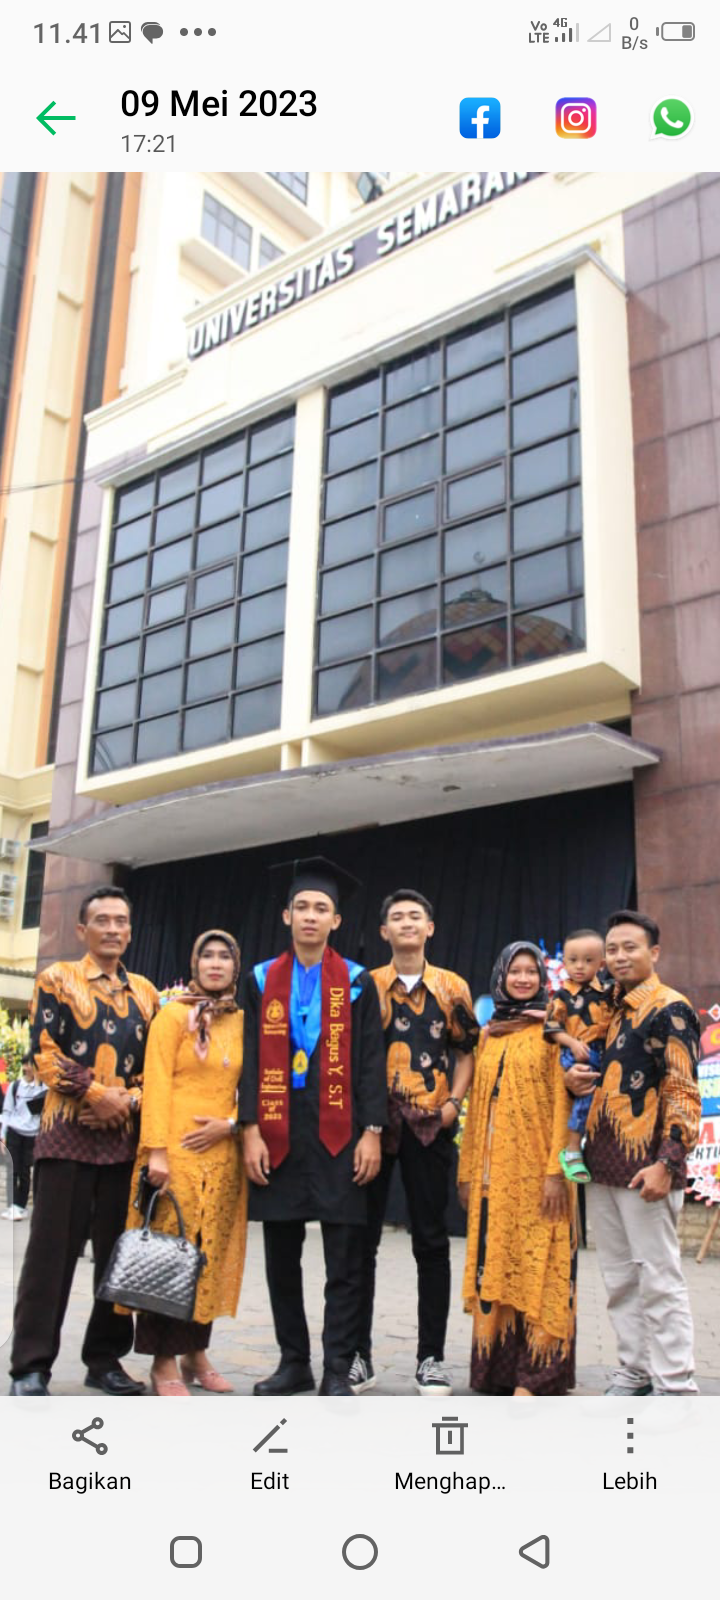 Pelepasan wisuda di universitas Semarang